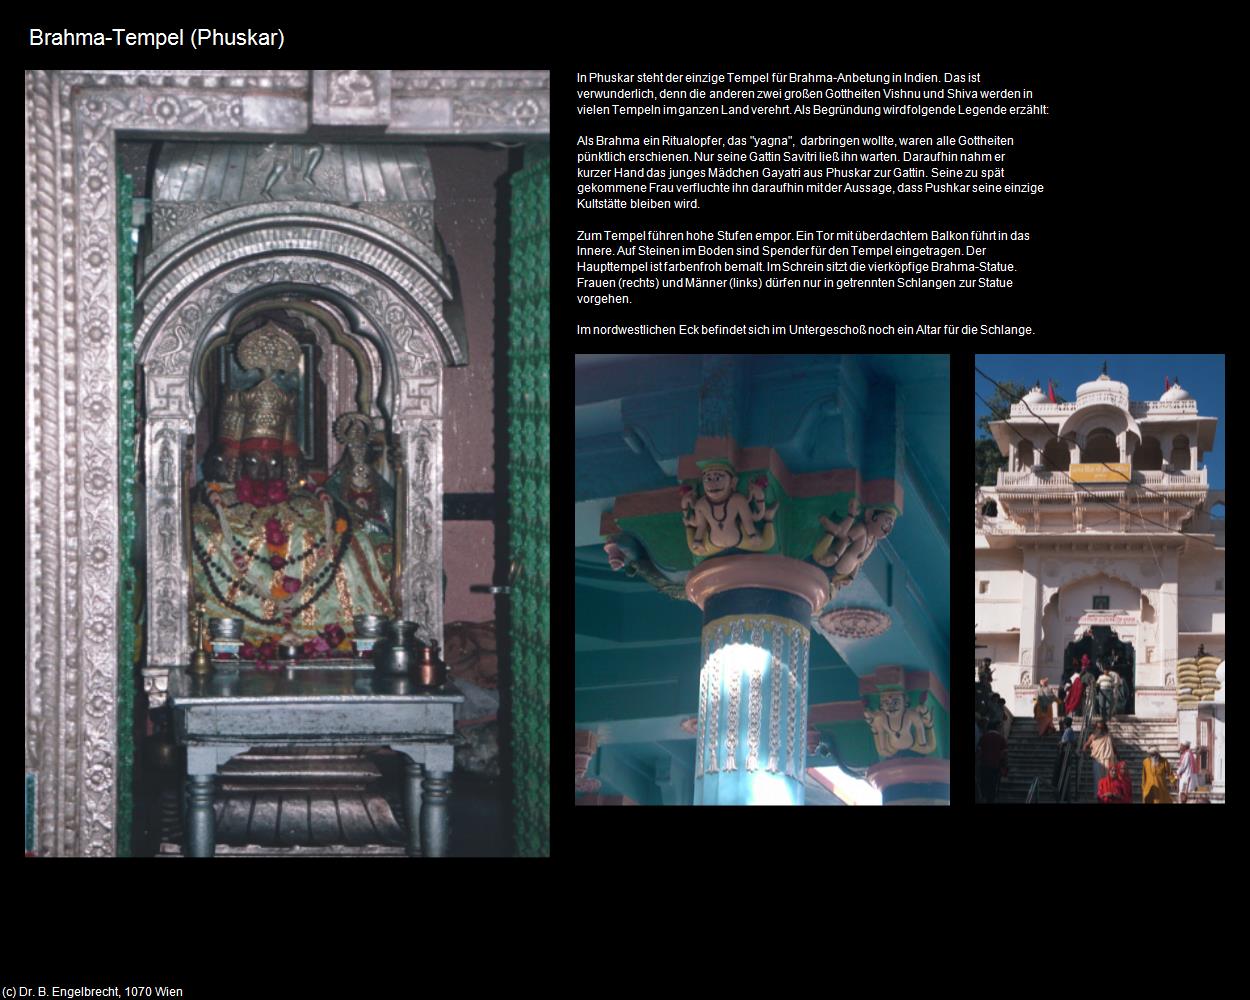 Brahma-Tempel (Puskhar) in Rajasthan - das Land der Könige